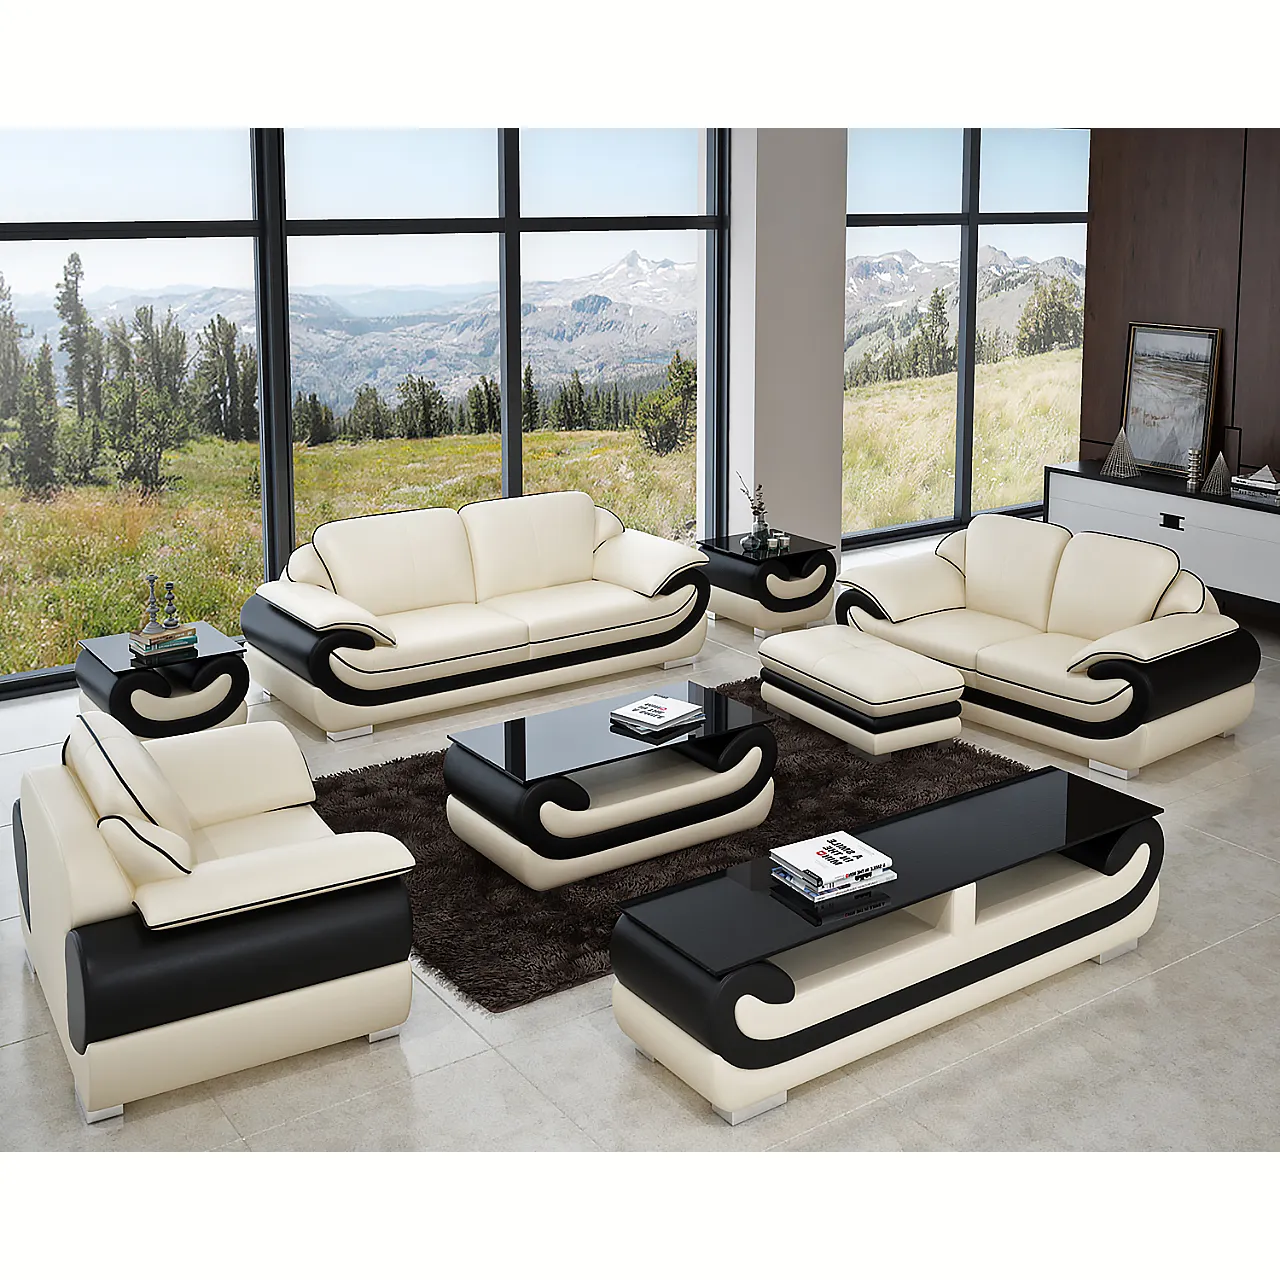 Set di divani in stile italiano soggiorno divano in tessuto in pelle set di mobili con mobili da soggiorno tavolo centrale mobili l design